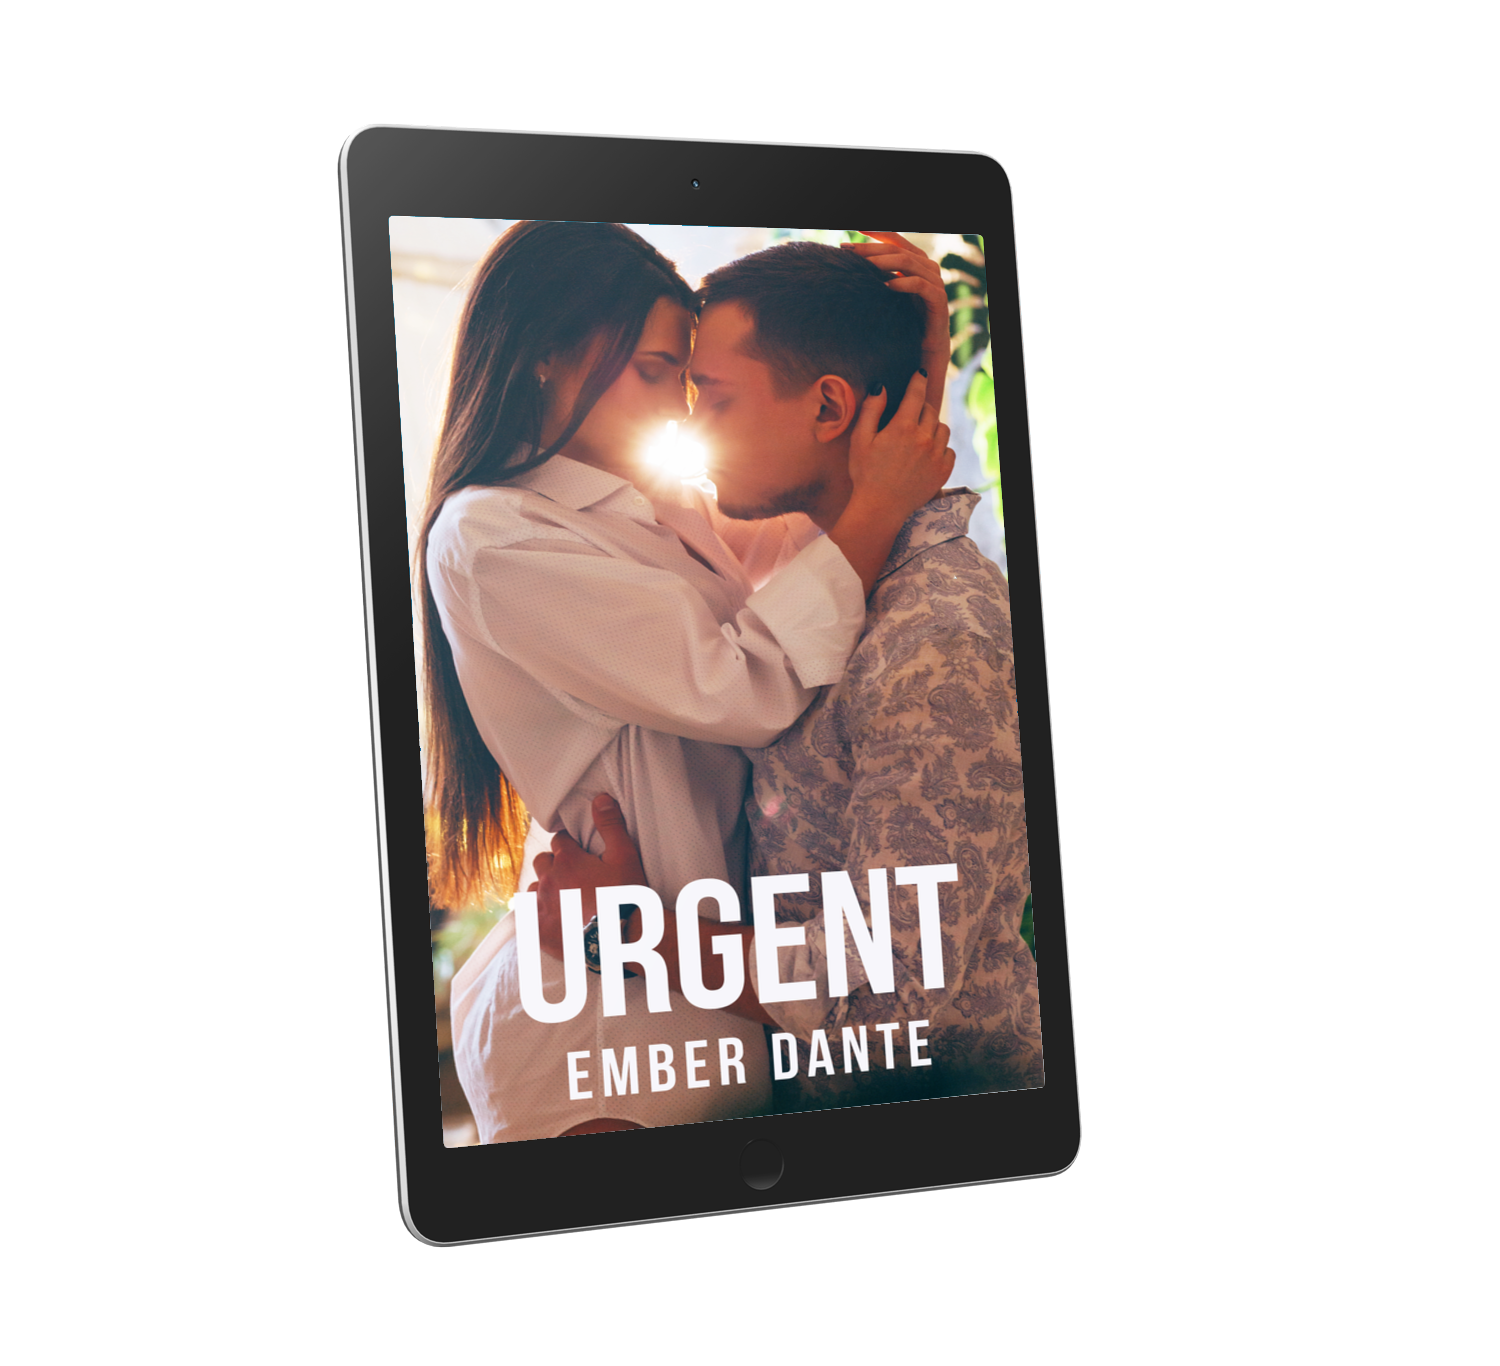 cover for the novel Urgent displayed on an ereader tablet